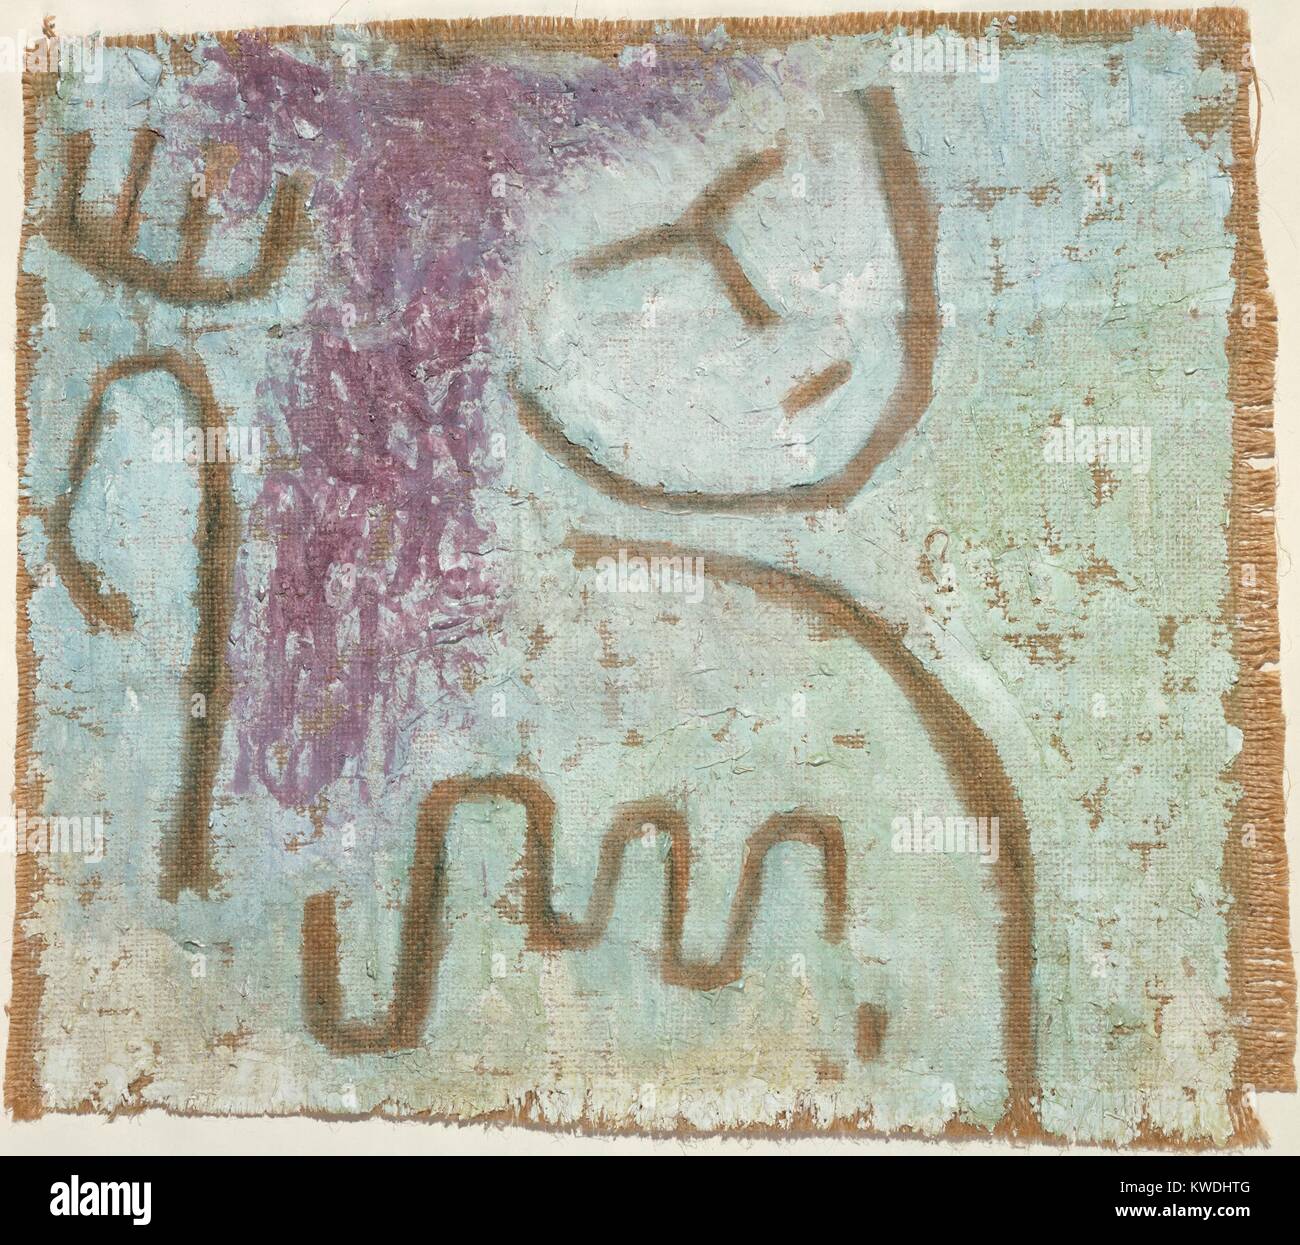 Wenig Hoffnung, von Paul Klee, 1938, Schweizer Malerei, Gips und Aquarell auf Leinwand. In den späten 1930er Jahren, Klees Arbeit wurde pessimistisch, was seinem persönlichen Schicksal und der politischen Situation. Die grobe Malerei auf Leinwand simuliert physischer Verfall (BSLOC 2017 7 30) Stockfoto